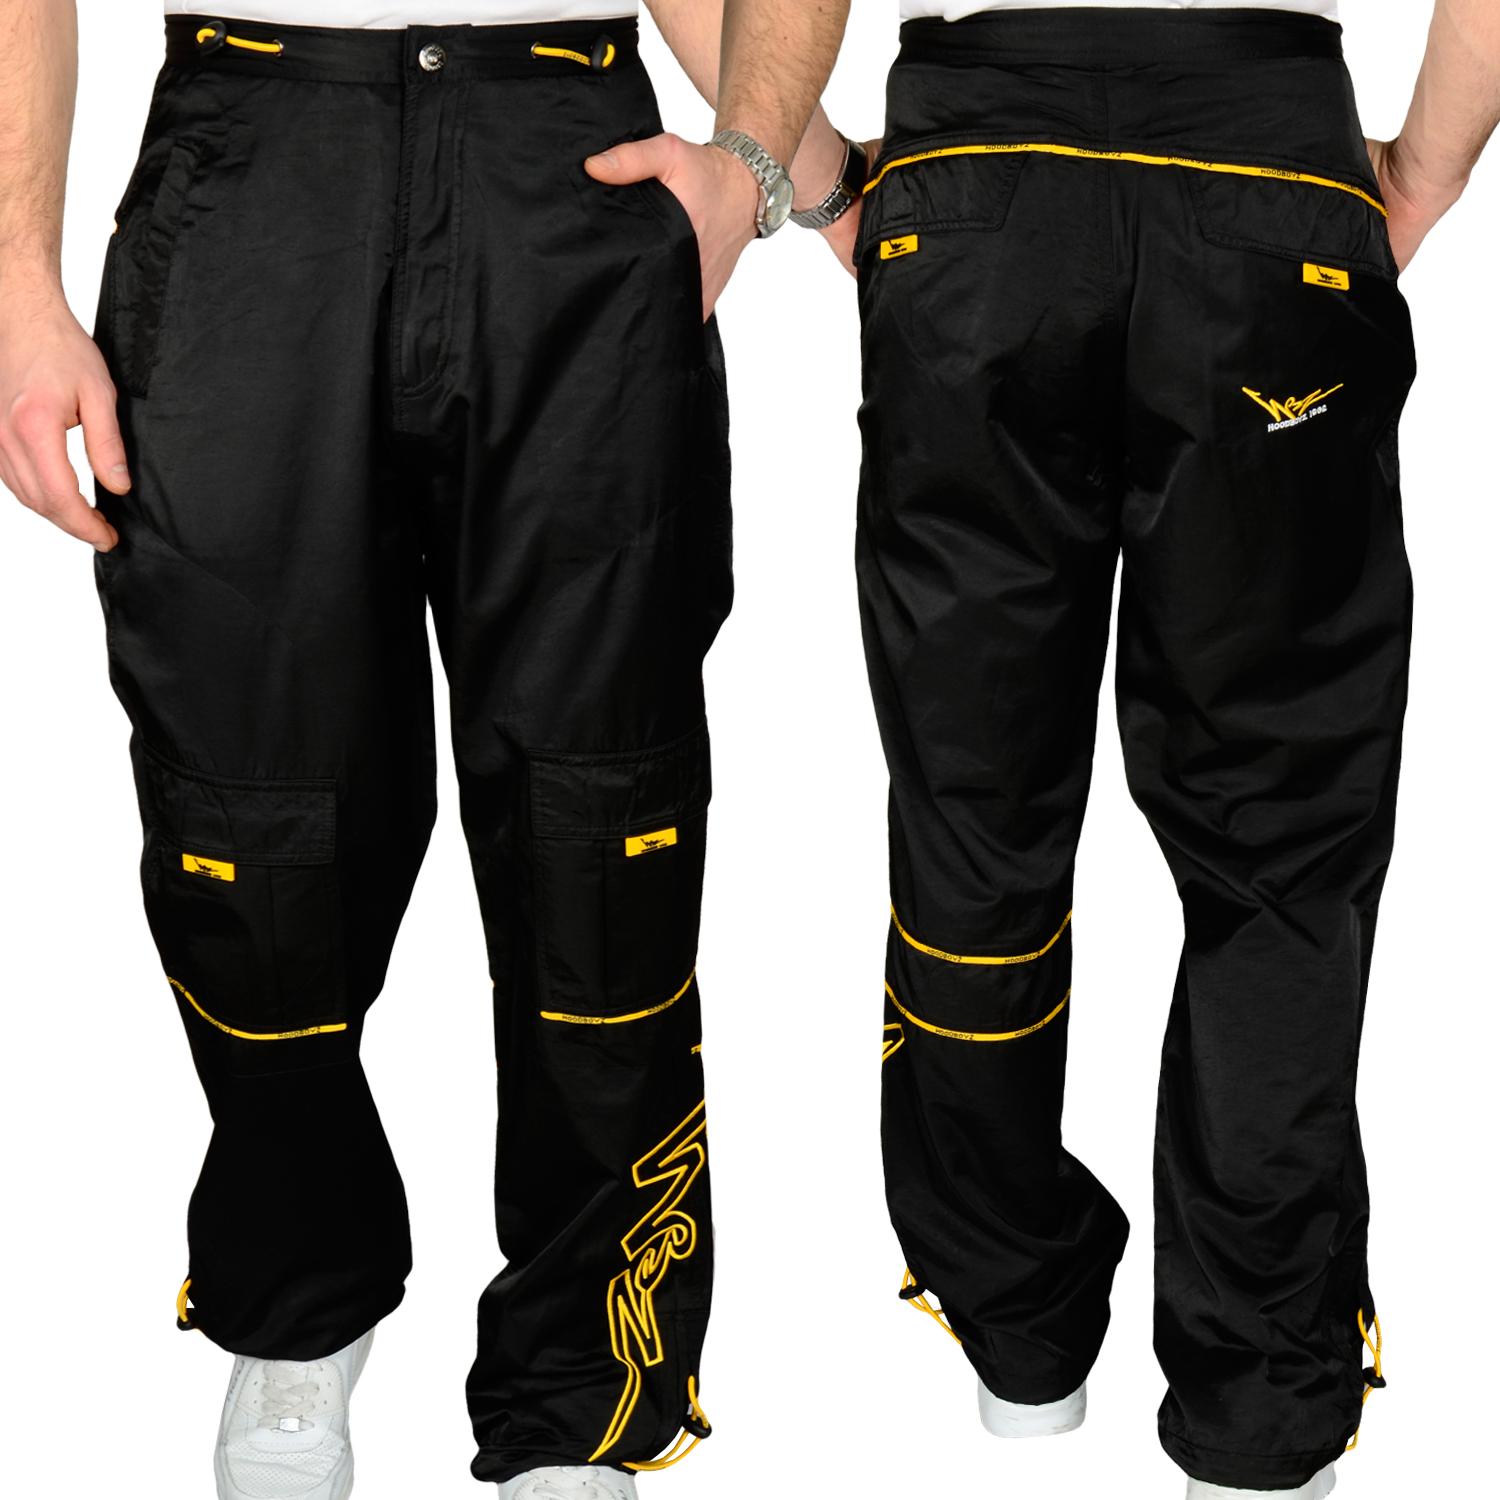 Foto Hoodboyz Logo Hombres Pantalones De Entrenamiento Negro Amarilho